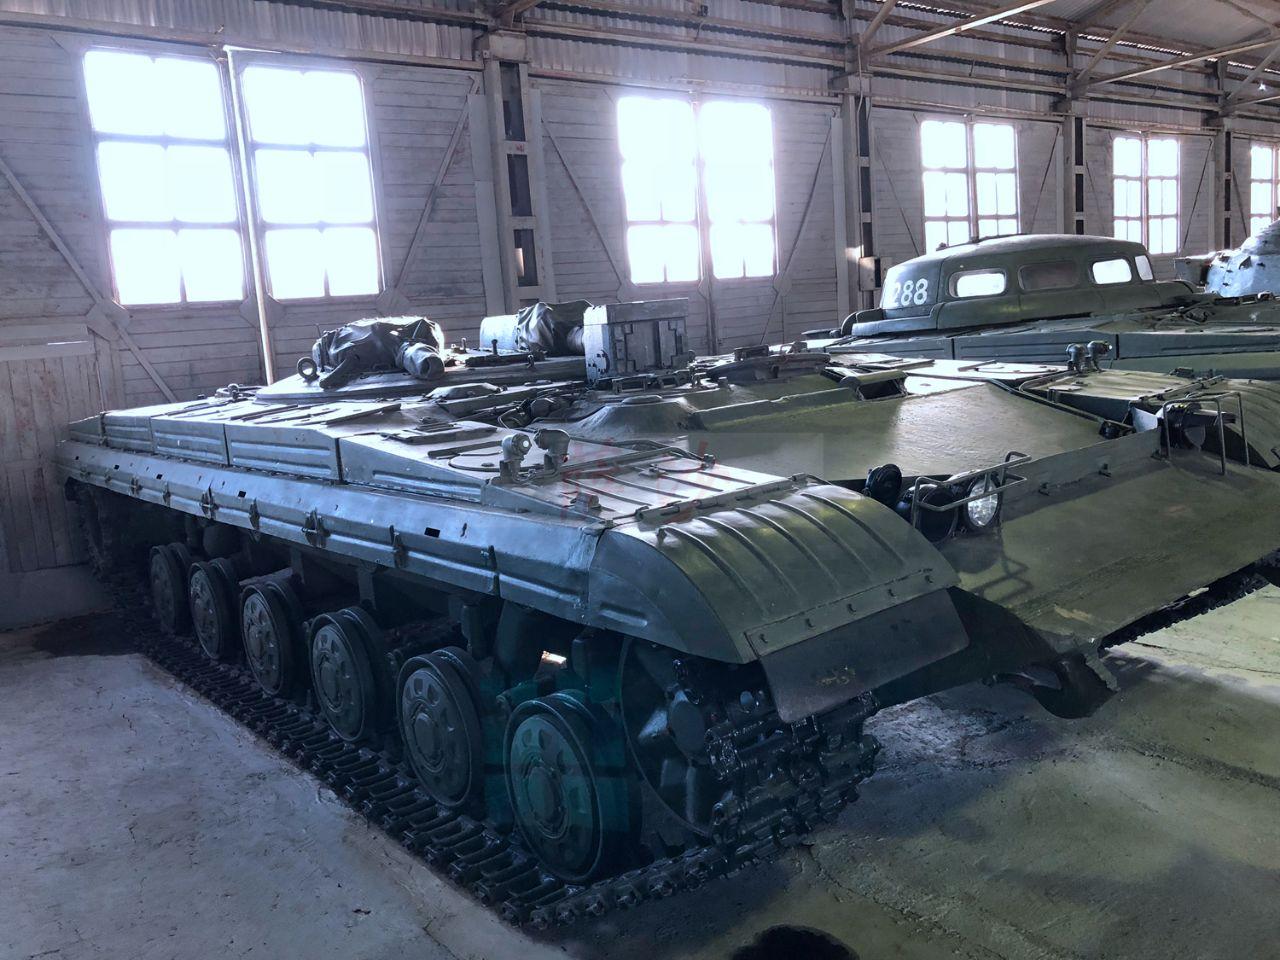 2门火炮配1枚导弹的超级坦克苏联287工程萨沙的兵器图谱第161期